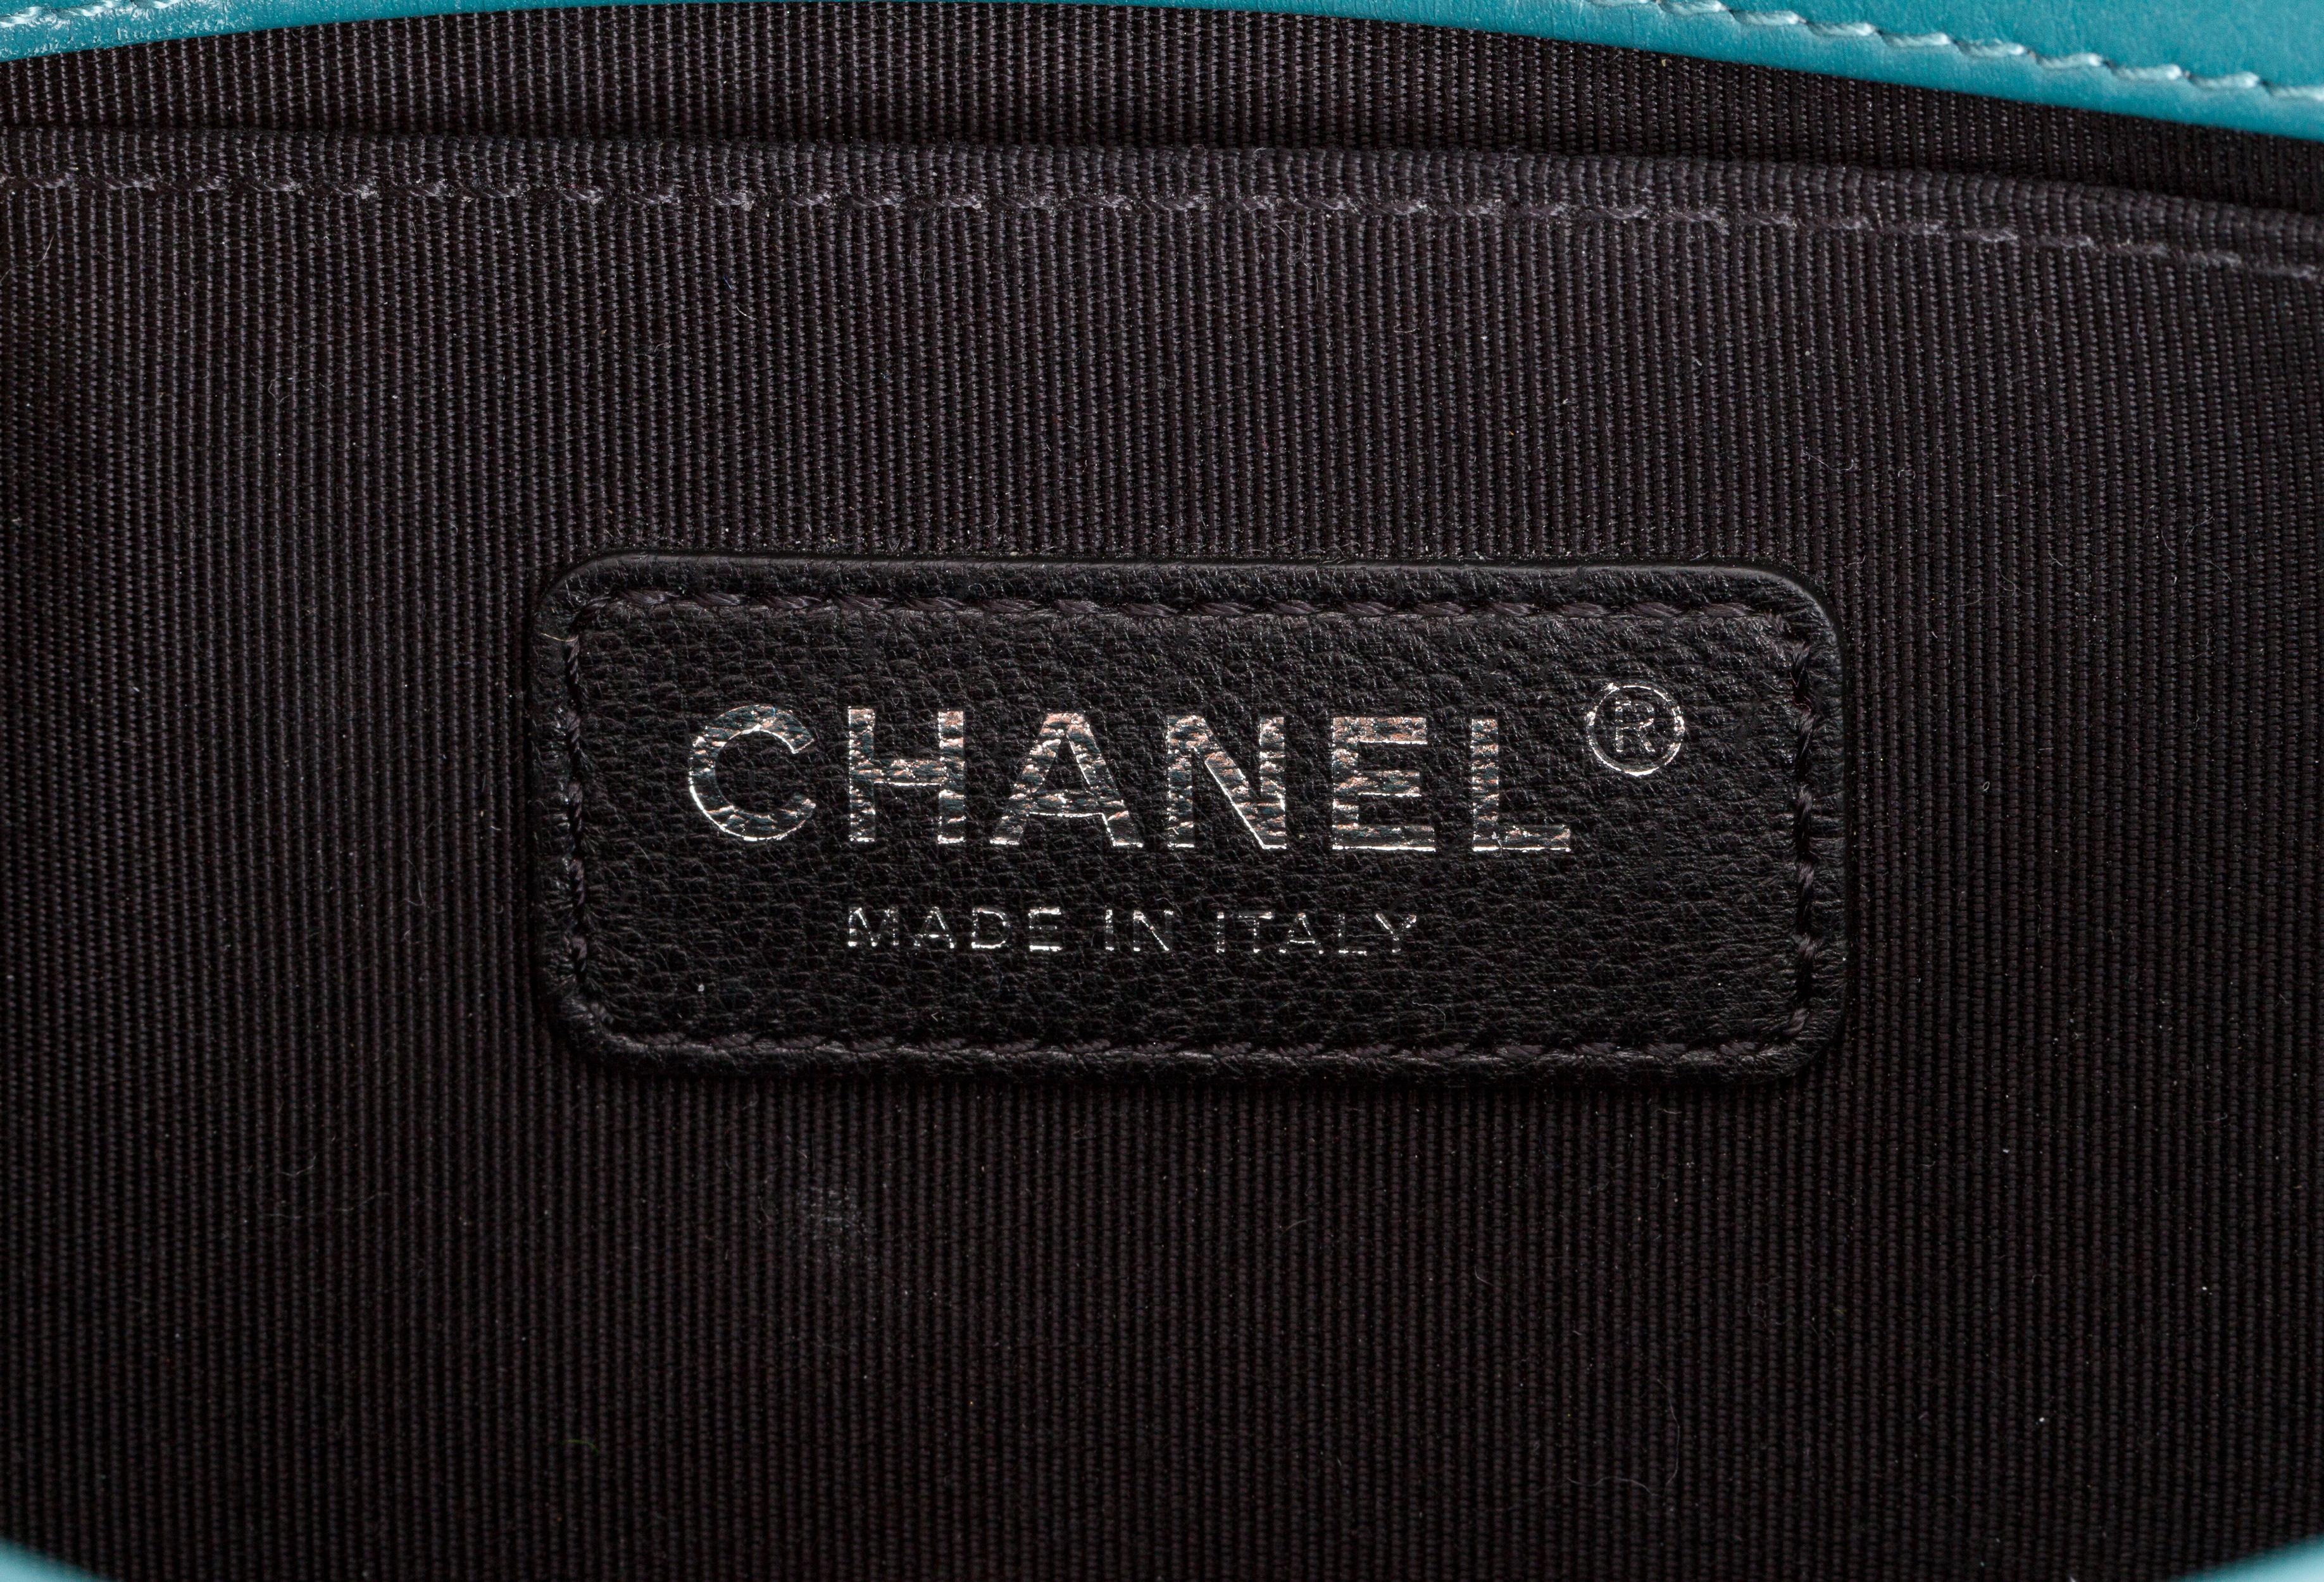 New Chanel Cerulean Blue Small Boy Bag 1